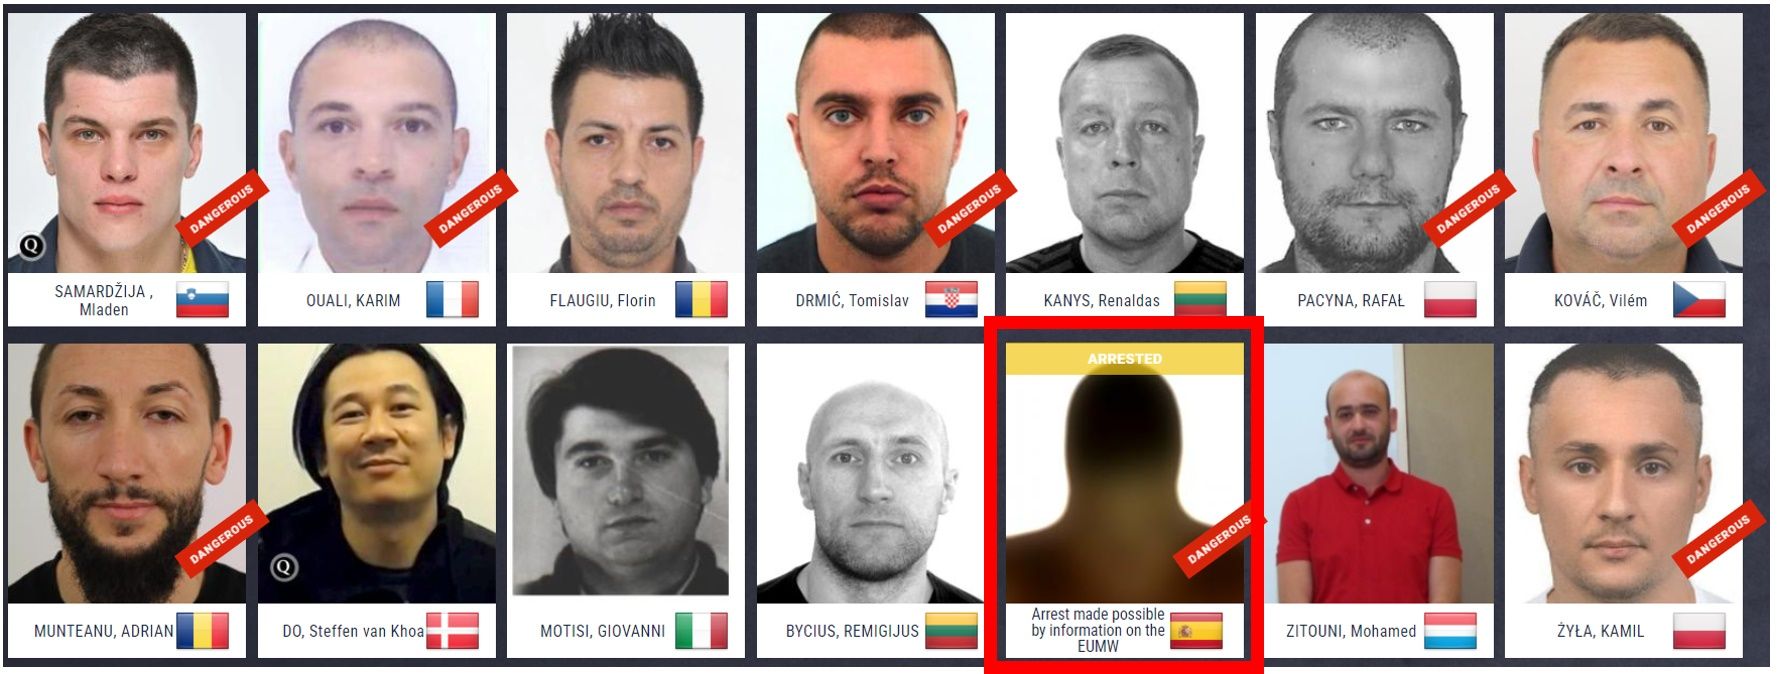 Lista de los fugitivos más buscados en la UE actualizada tras la detención de Aomar Abdellah Lah Belghazi, reclamado por España desde 2020